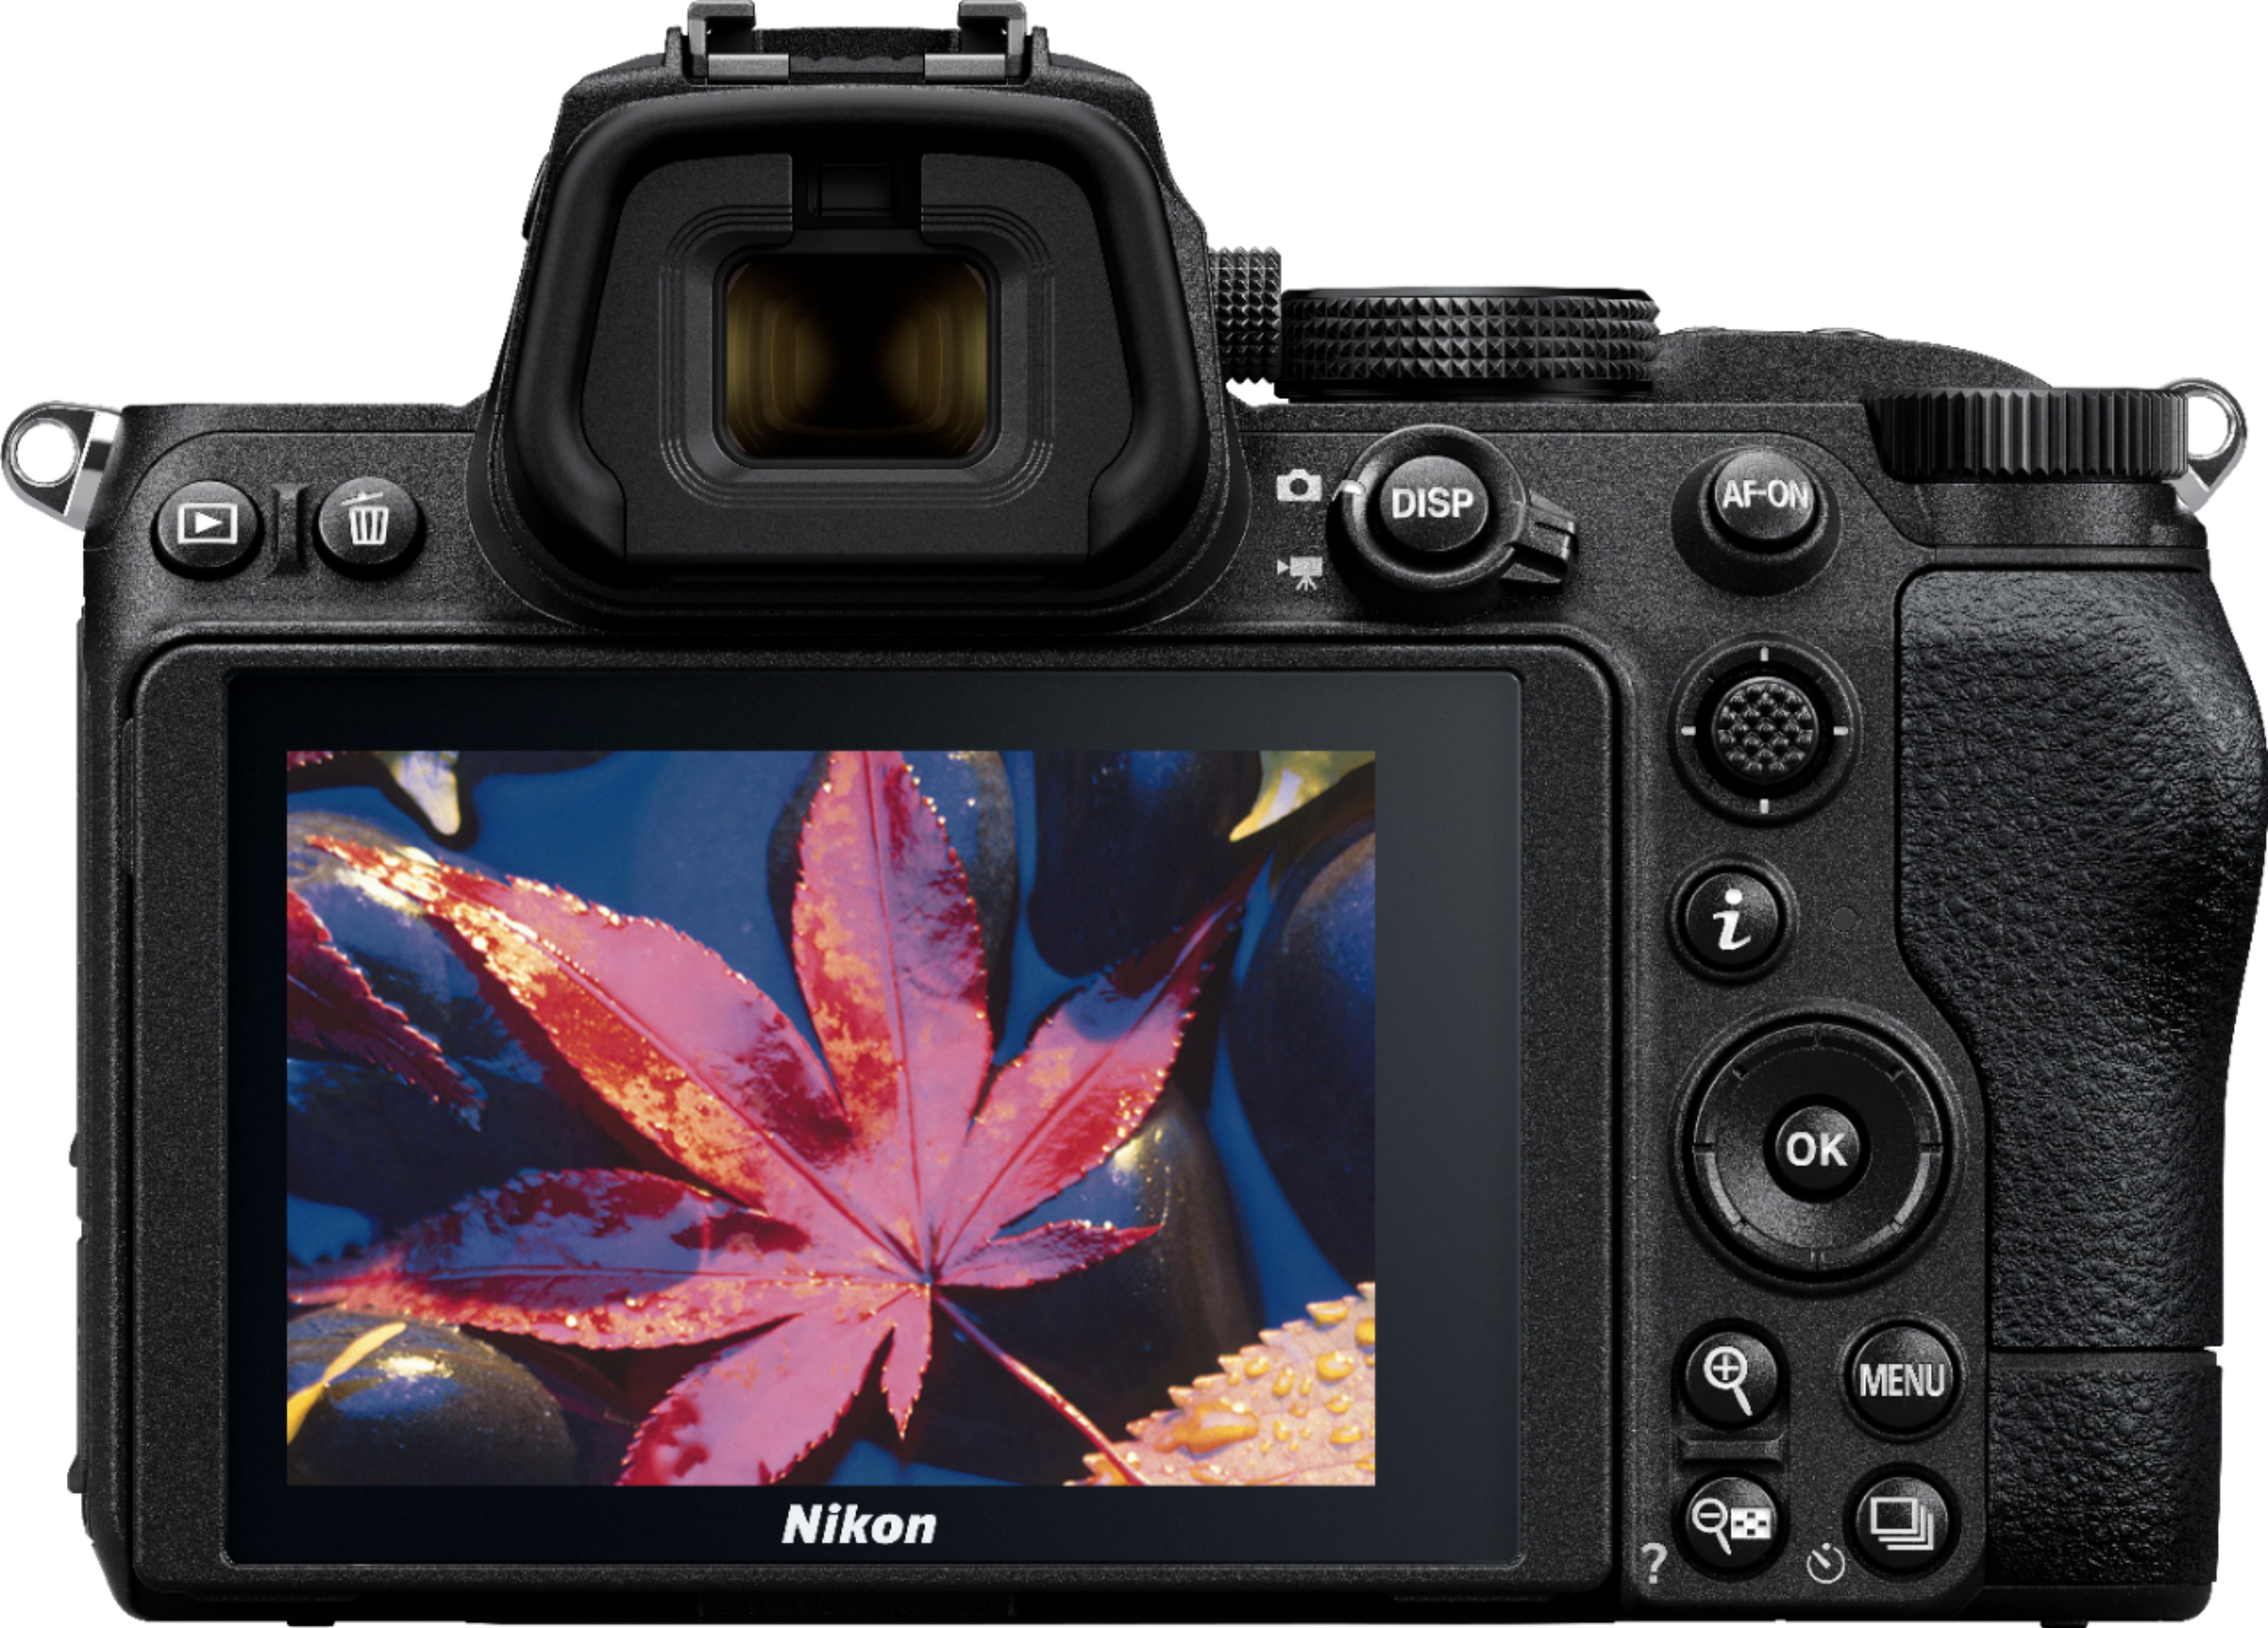 Nikon Z 5 w/ NIKKOR Z 24-50mm f/4-6.3 Black 1642 - Best Buy